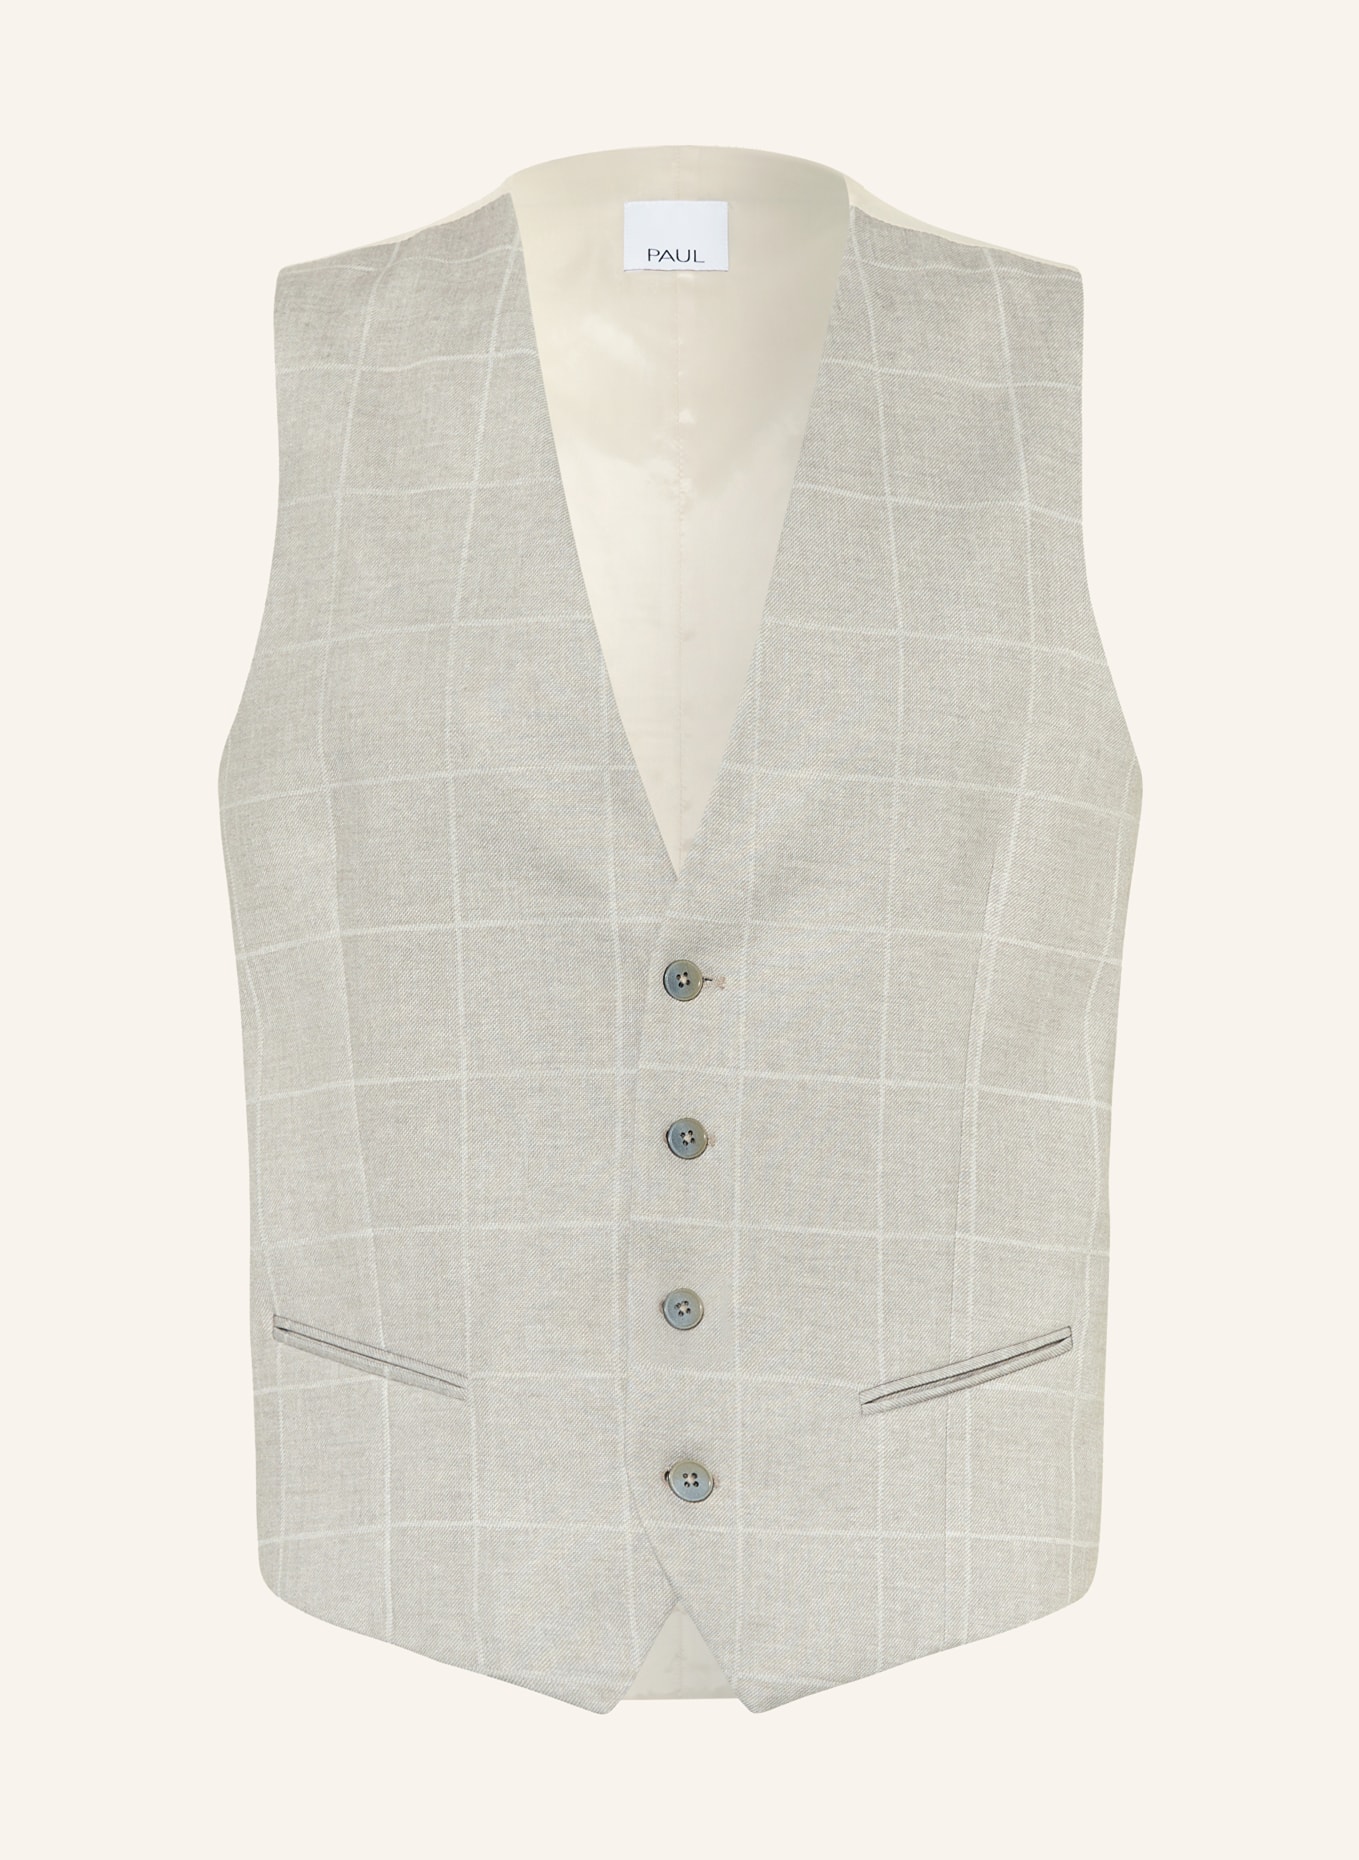 PAUL Suit vest slim fit, Color: 220 SAND (Image 1)